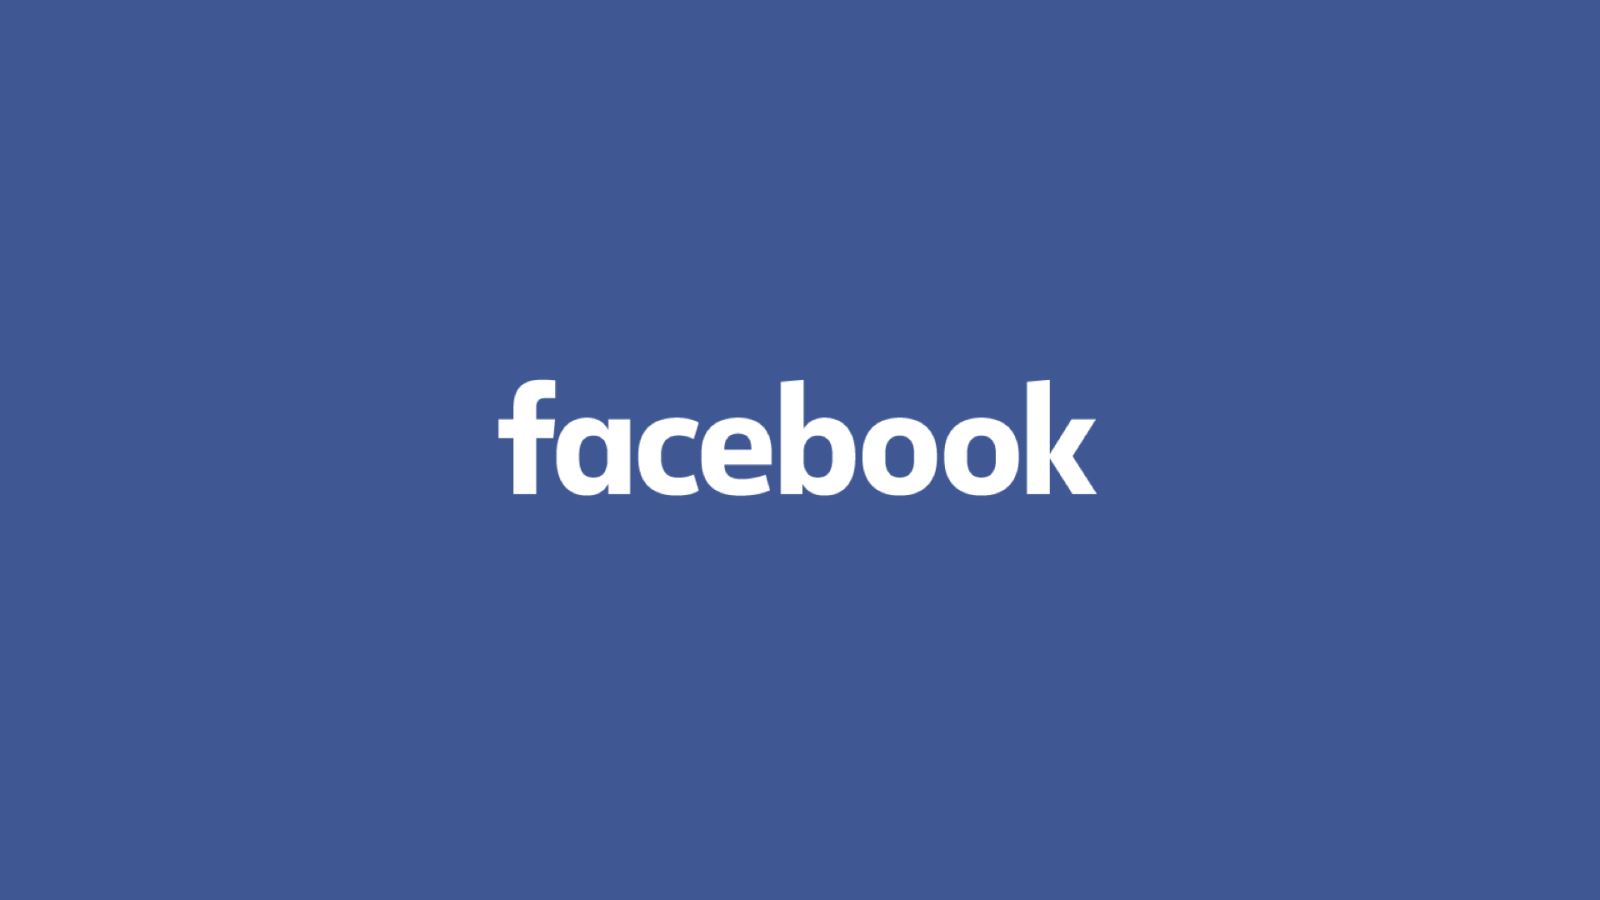 Facebook đổi tên đang là tin "hot" công nghệ trong tuần _ Nguồn ảnh: Facebook.com